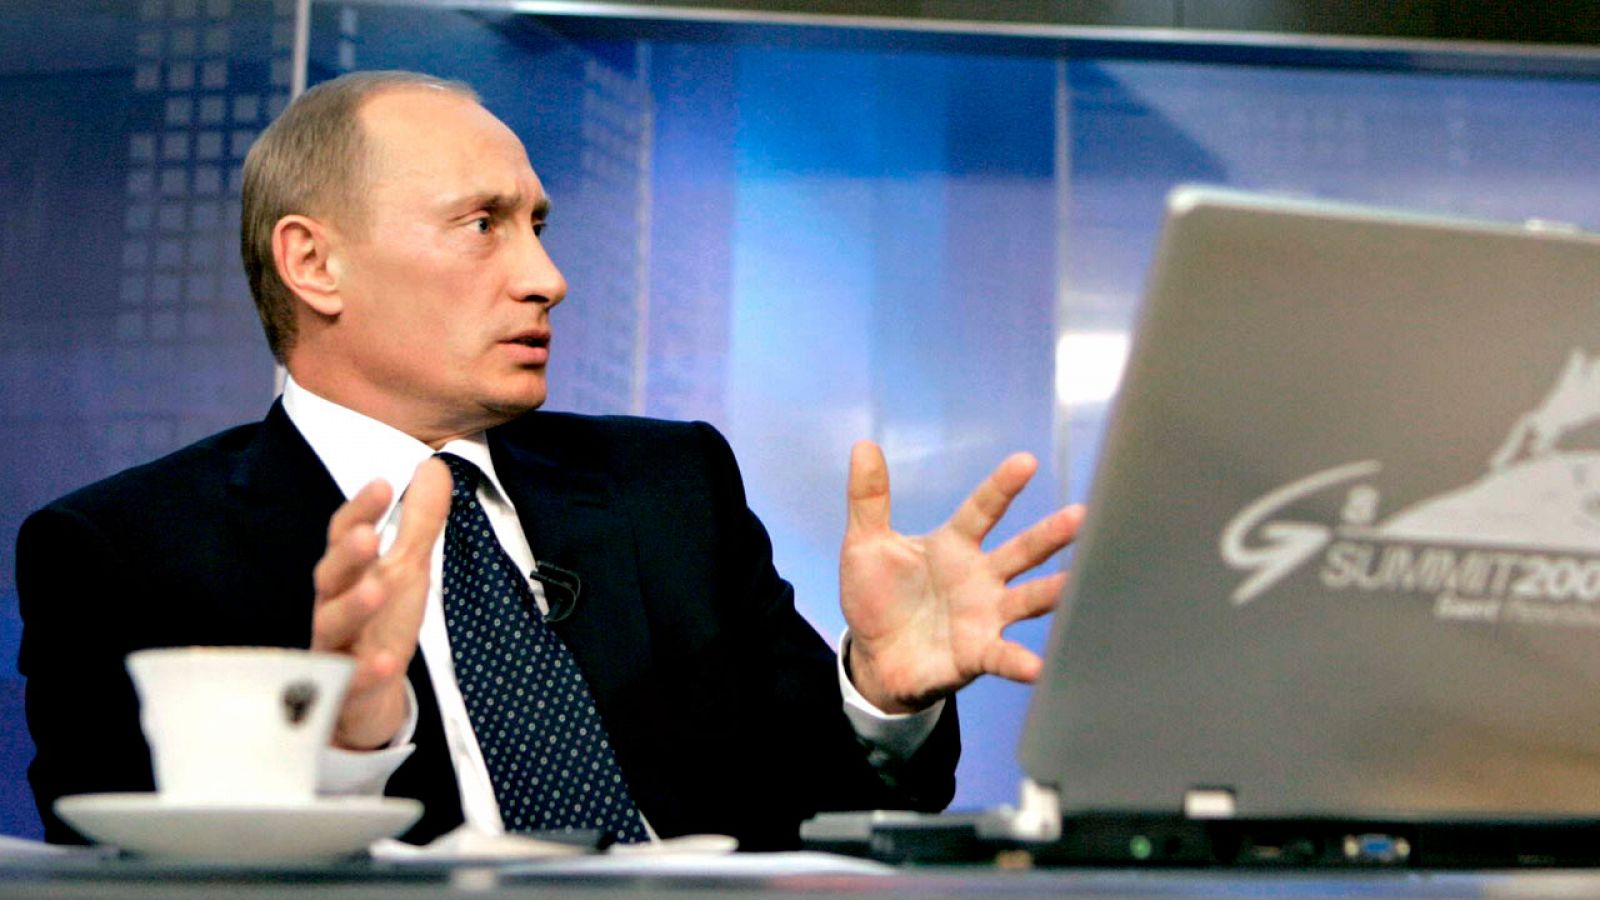 EE.UU. impone sanciones a Rusia por los ataques inform�ticos para interferir en las elecciones de 2016